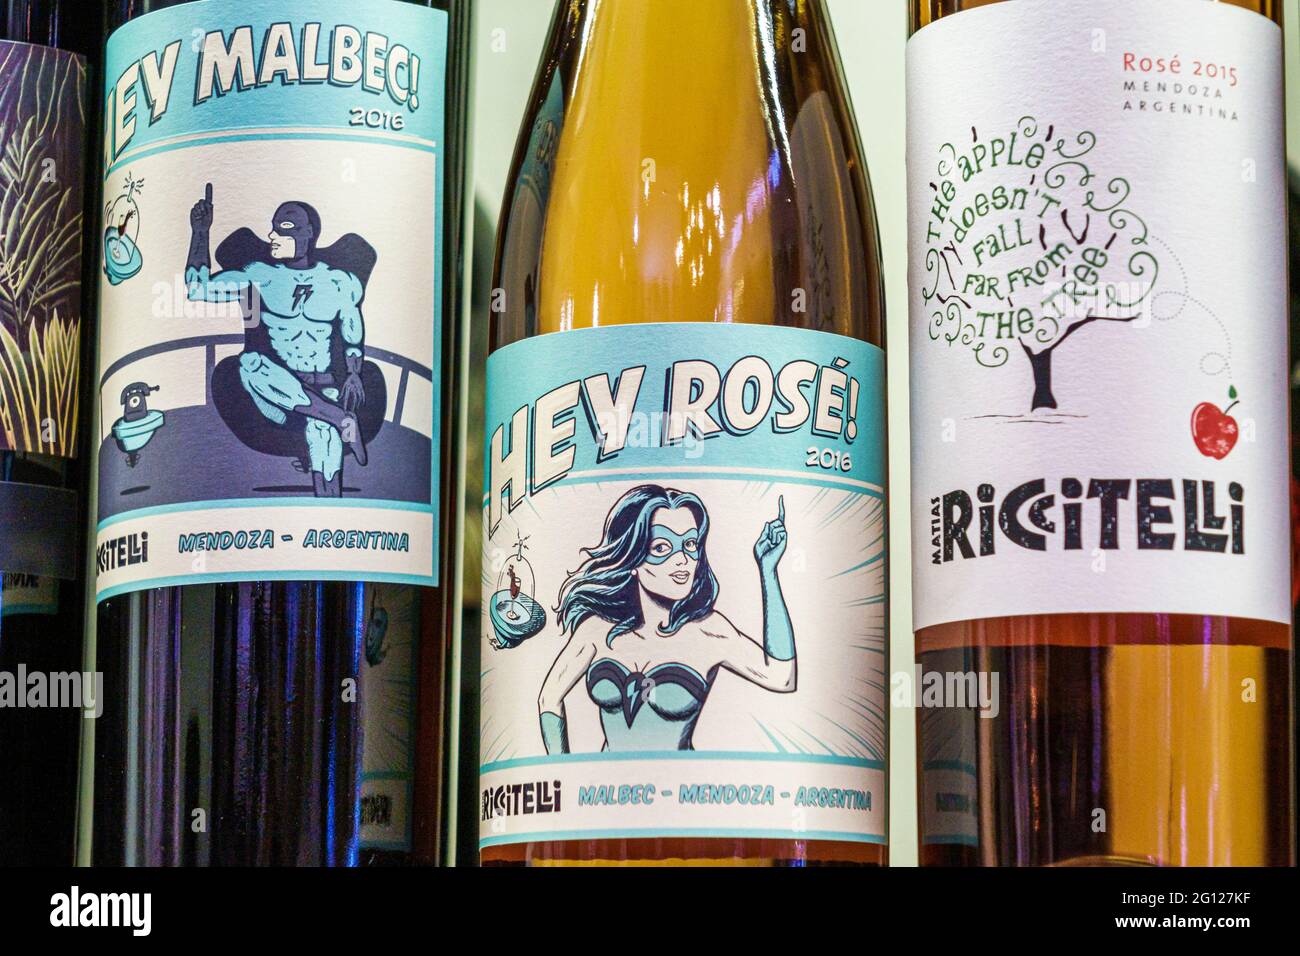 Argentina Buenos Aires vinos regionales Mendoza Marias Riccitelli selección de vinos etiquetas rosa malbec etiqueta arte compras Foto de stock